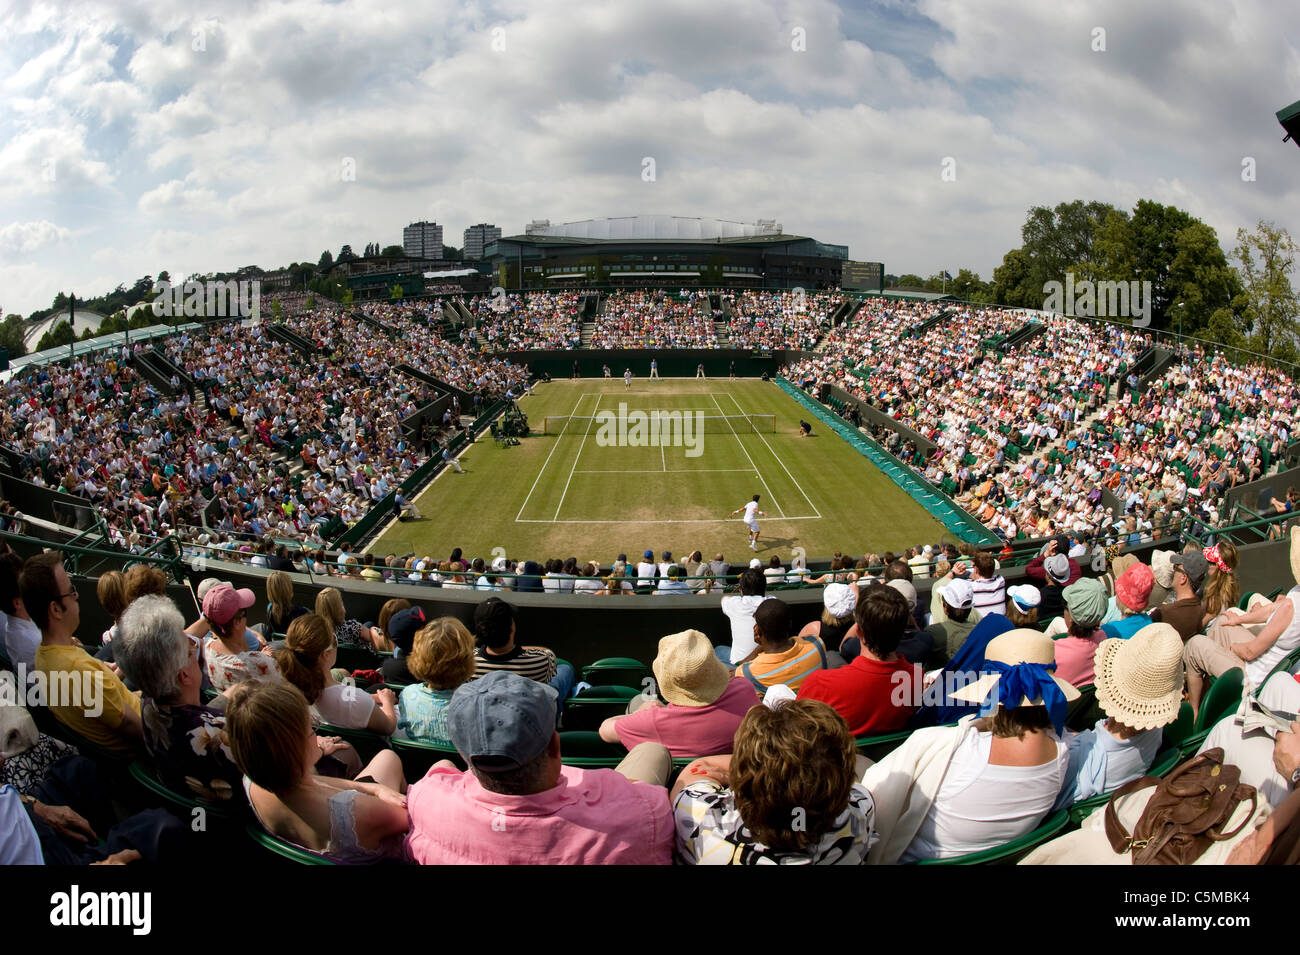 Vue sur cour 2 en 2009 aux Championnats de tennis de Wimbledon Banque D'Images